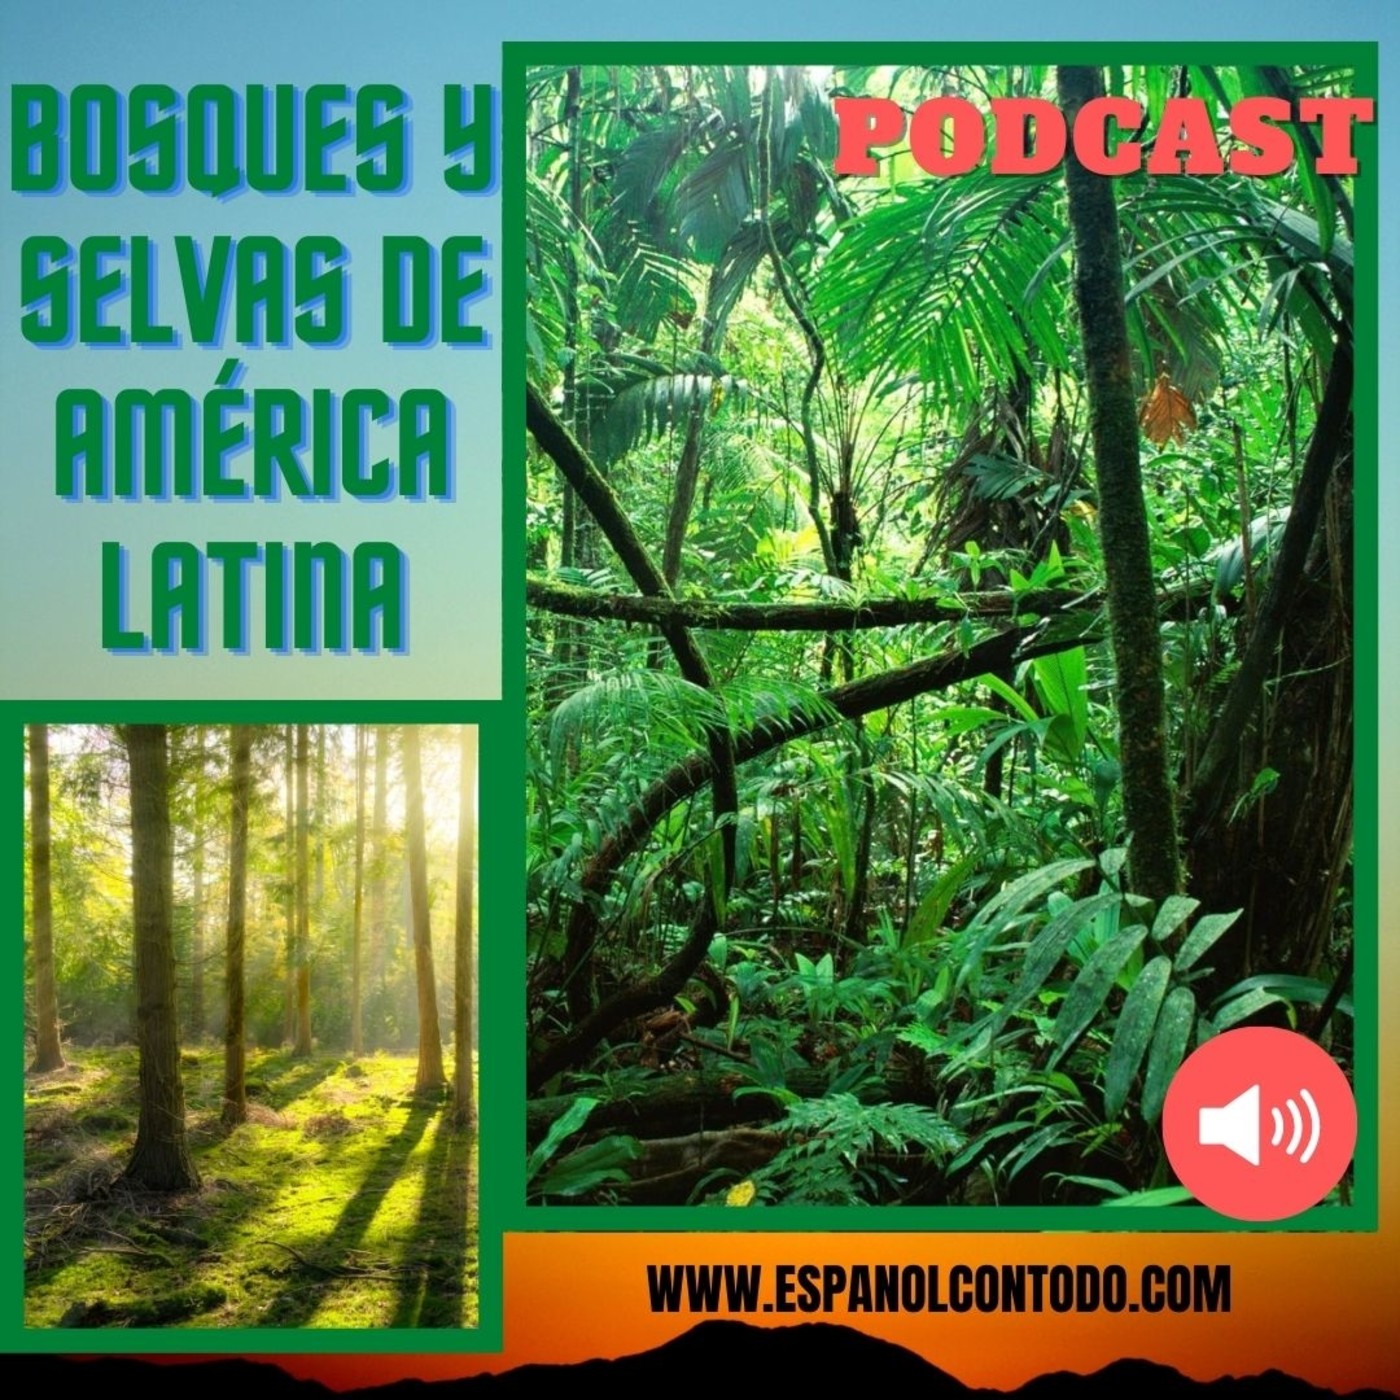 033 - Bosques y selvas de América Latina